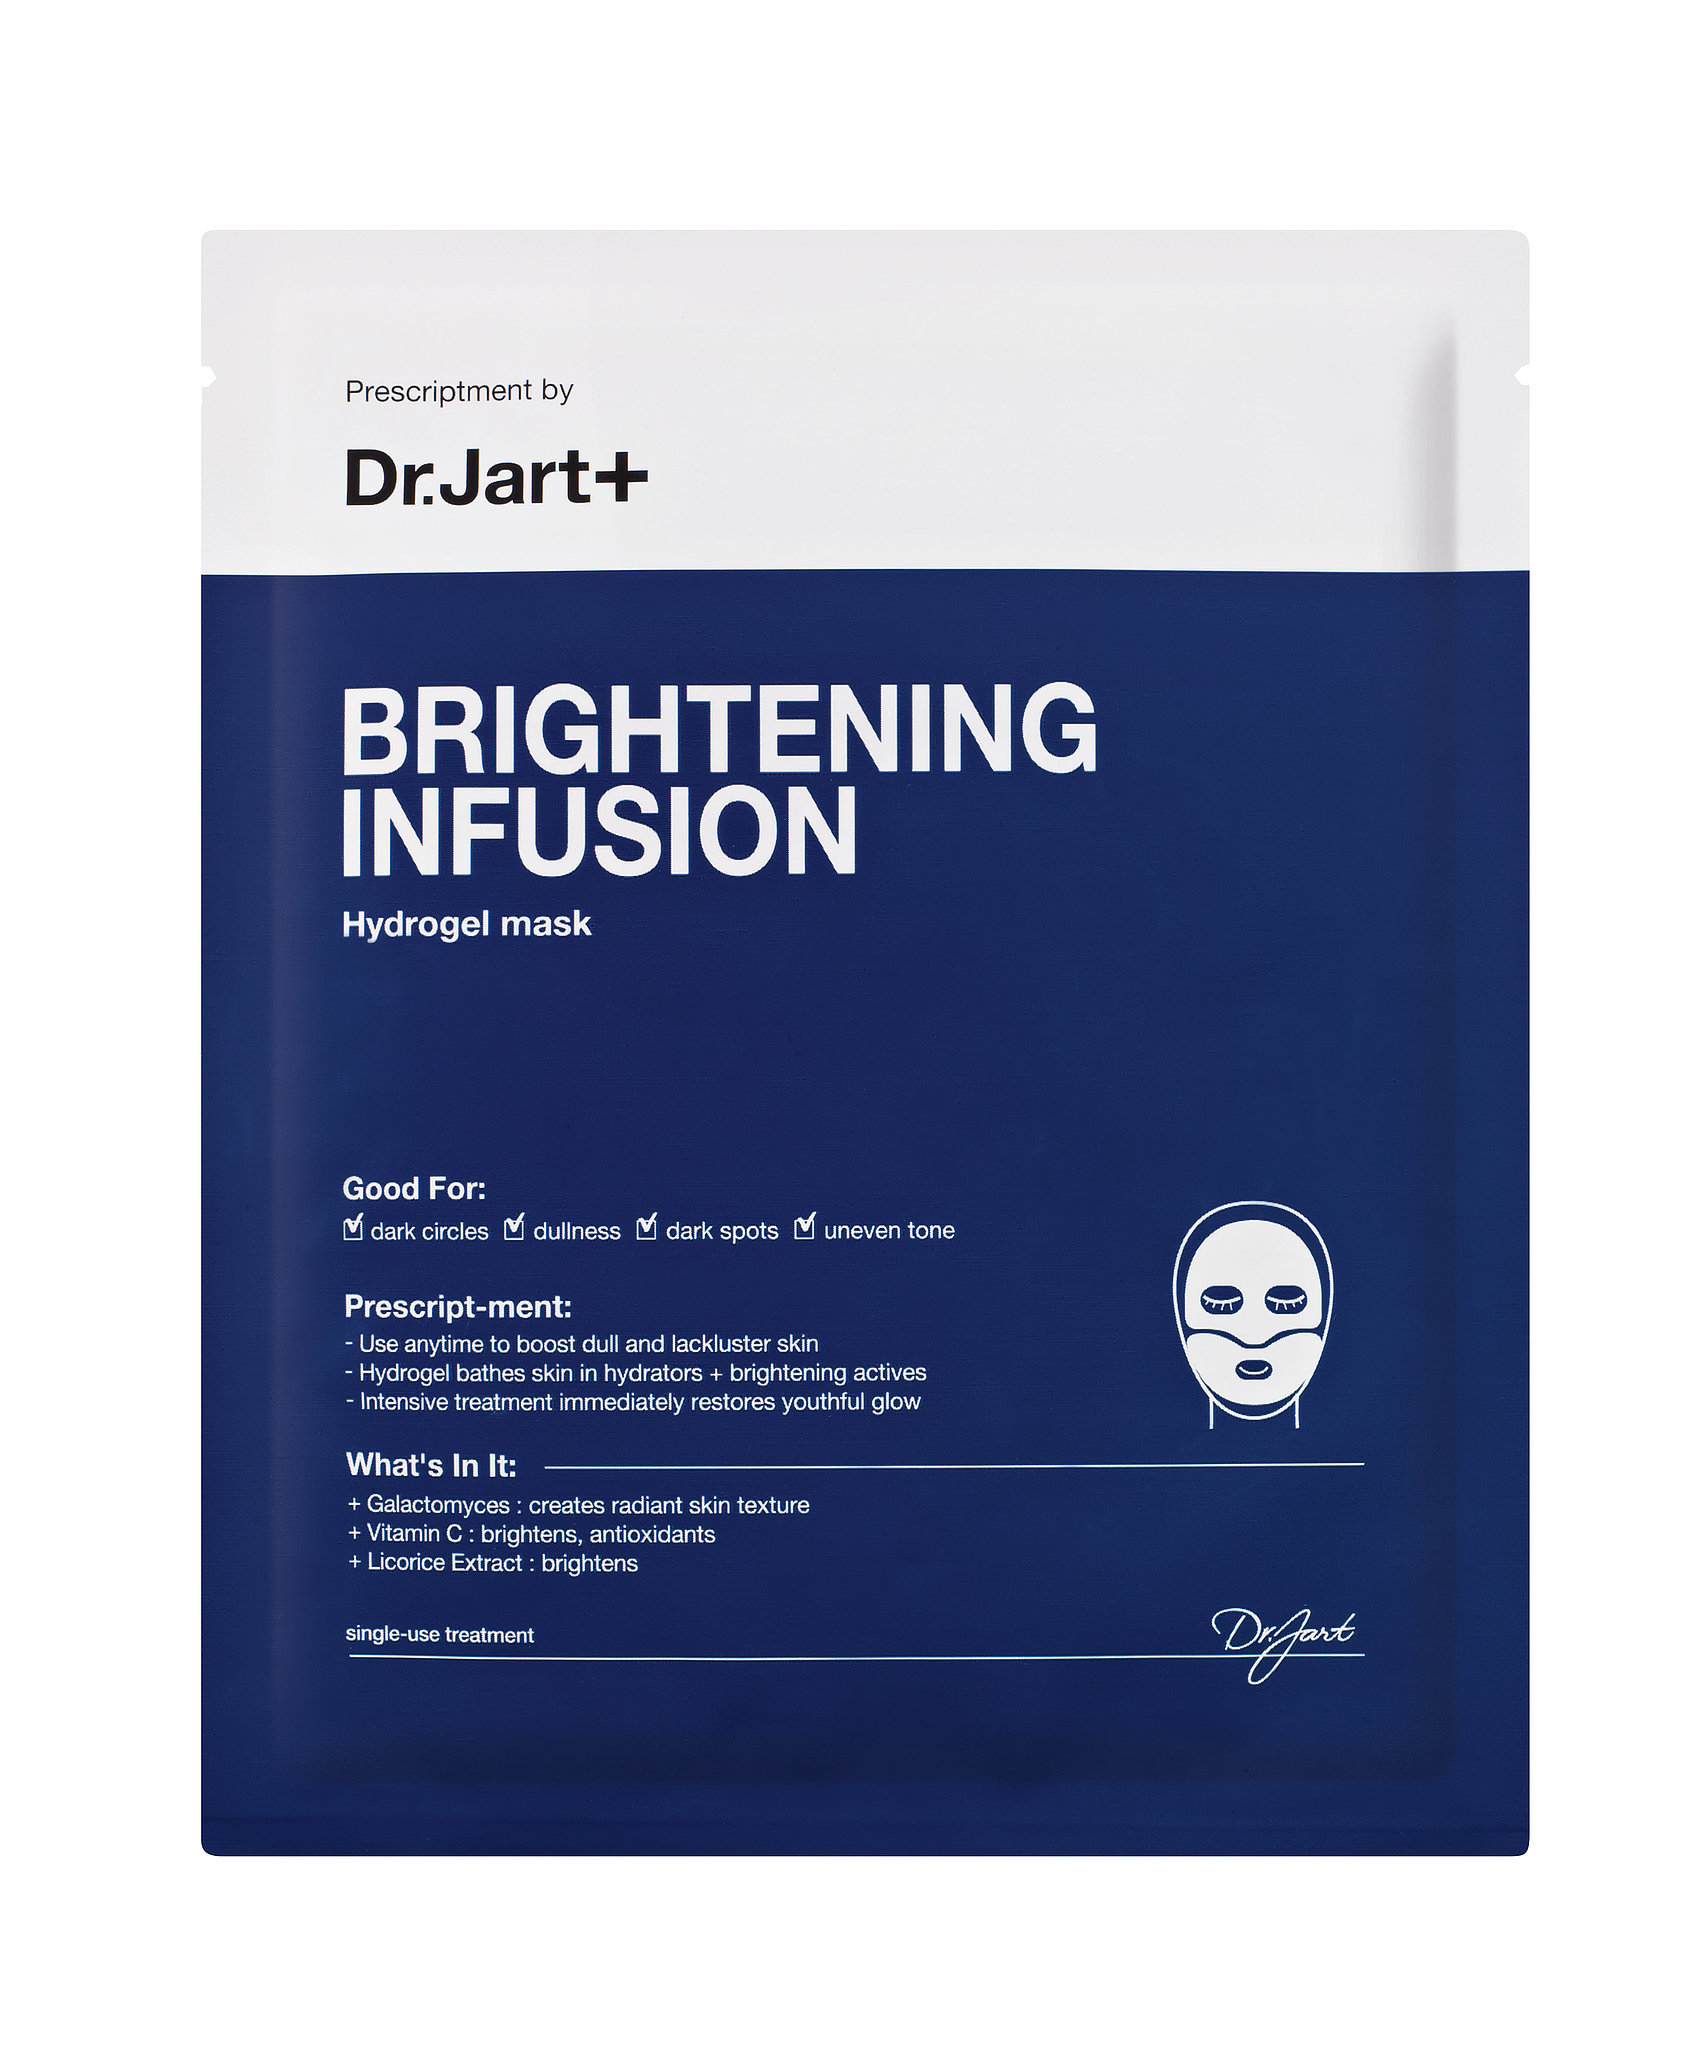 Mặt nạ Dr. jart + Brightening infusion hydrogel mask được nhiều chị em đánh giá là mỹ phẩm giá rẻ chất lượng tốt